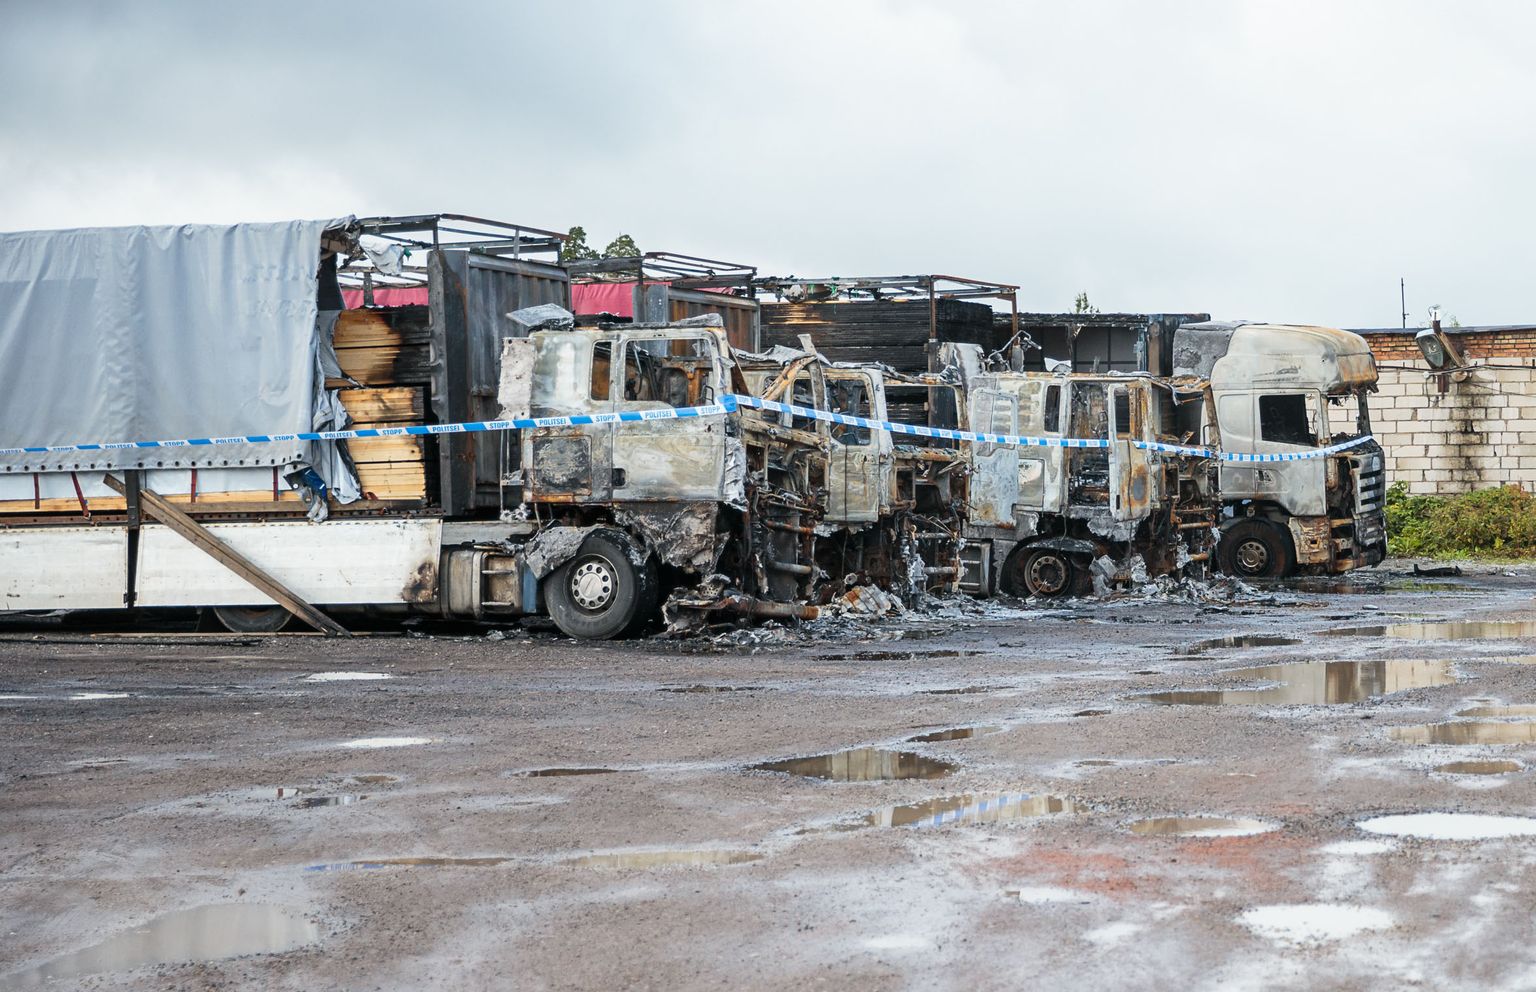 Злоумышленник в ночь на 22 августа поджег четыре фуры марки "MAN", а пятая "Scania" загорелась уже от них.